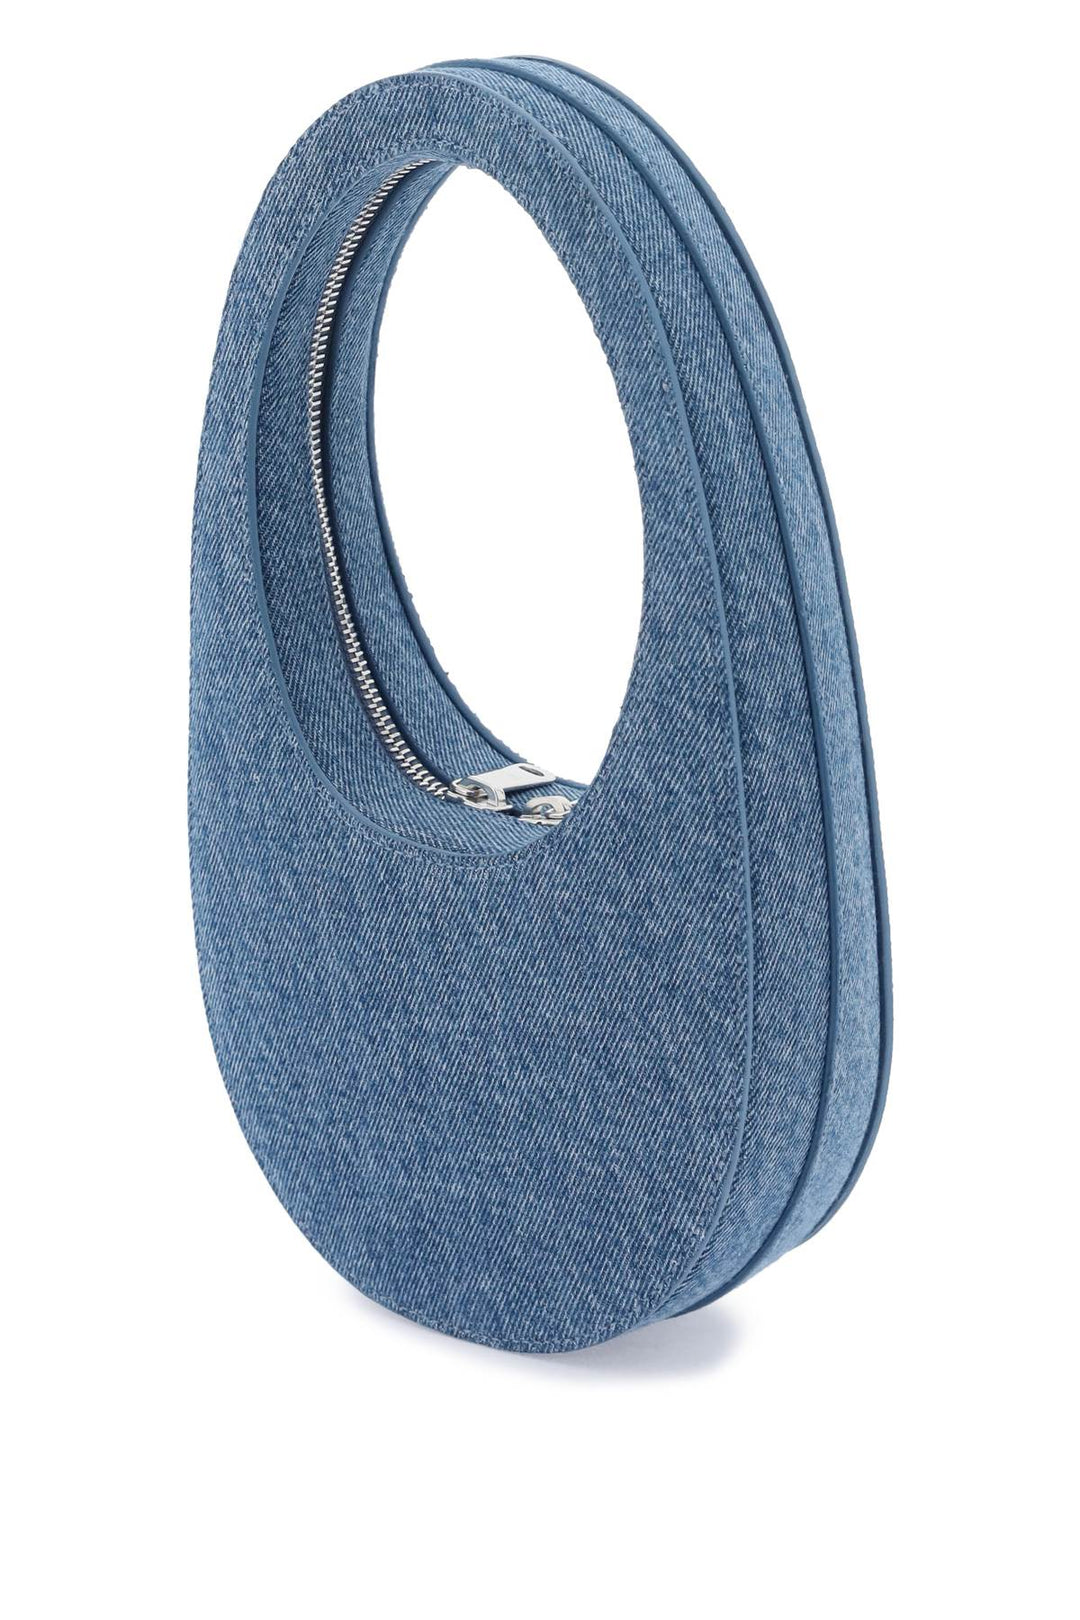 Coperni Swipe Mini Hobo Bag   Blu